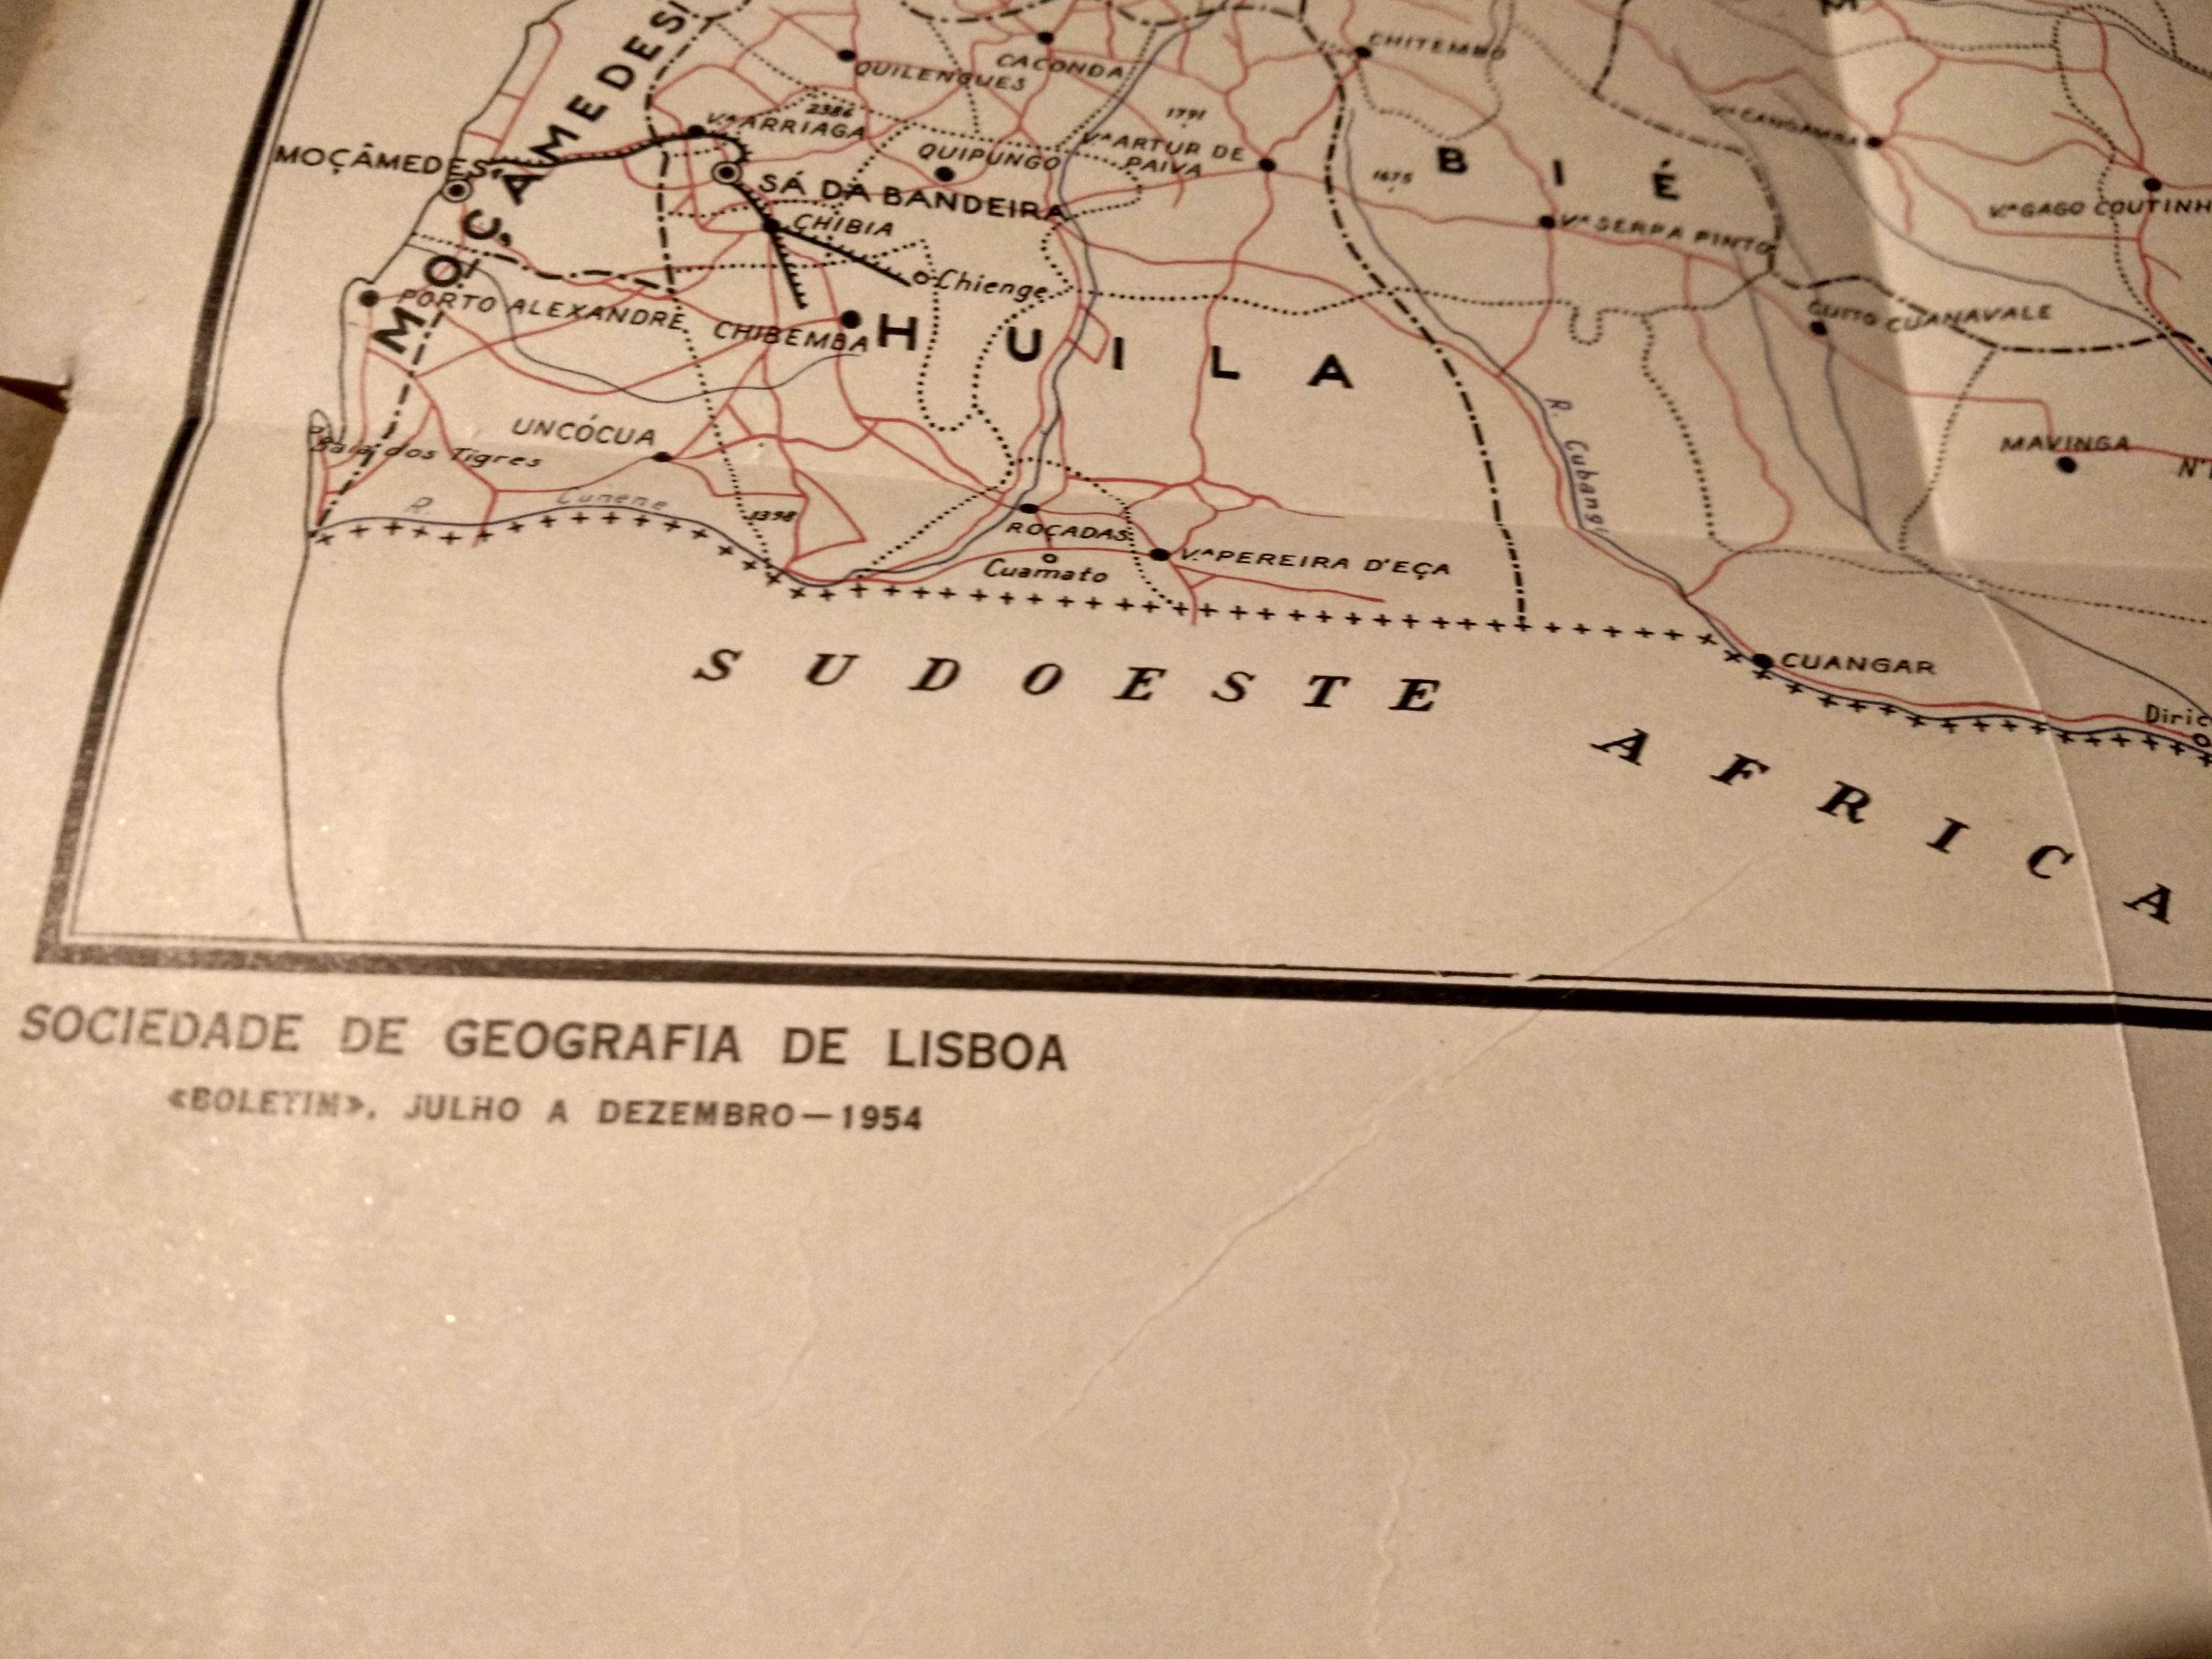 Publicação da Sociedade de Geografia de Lisboa - ano completo de 1954